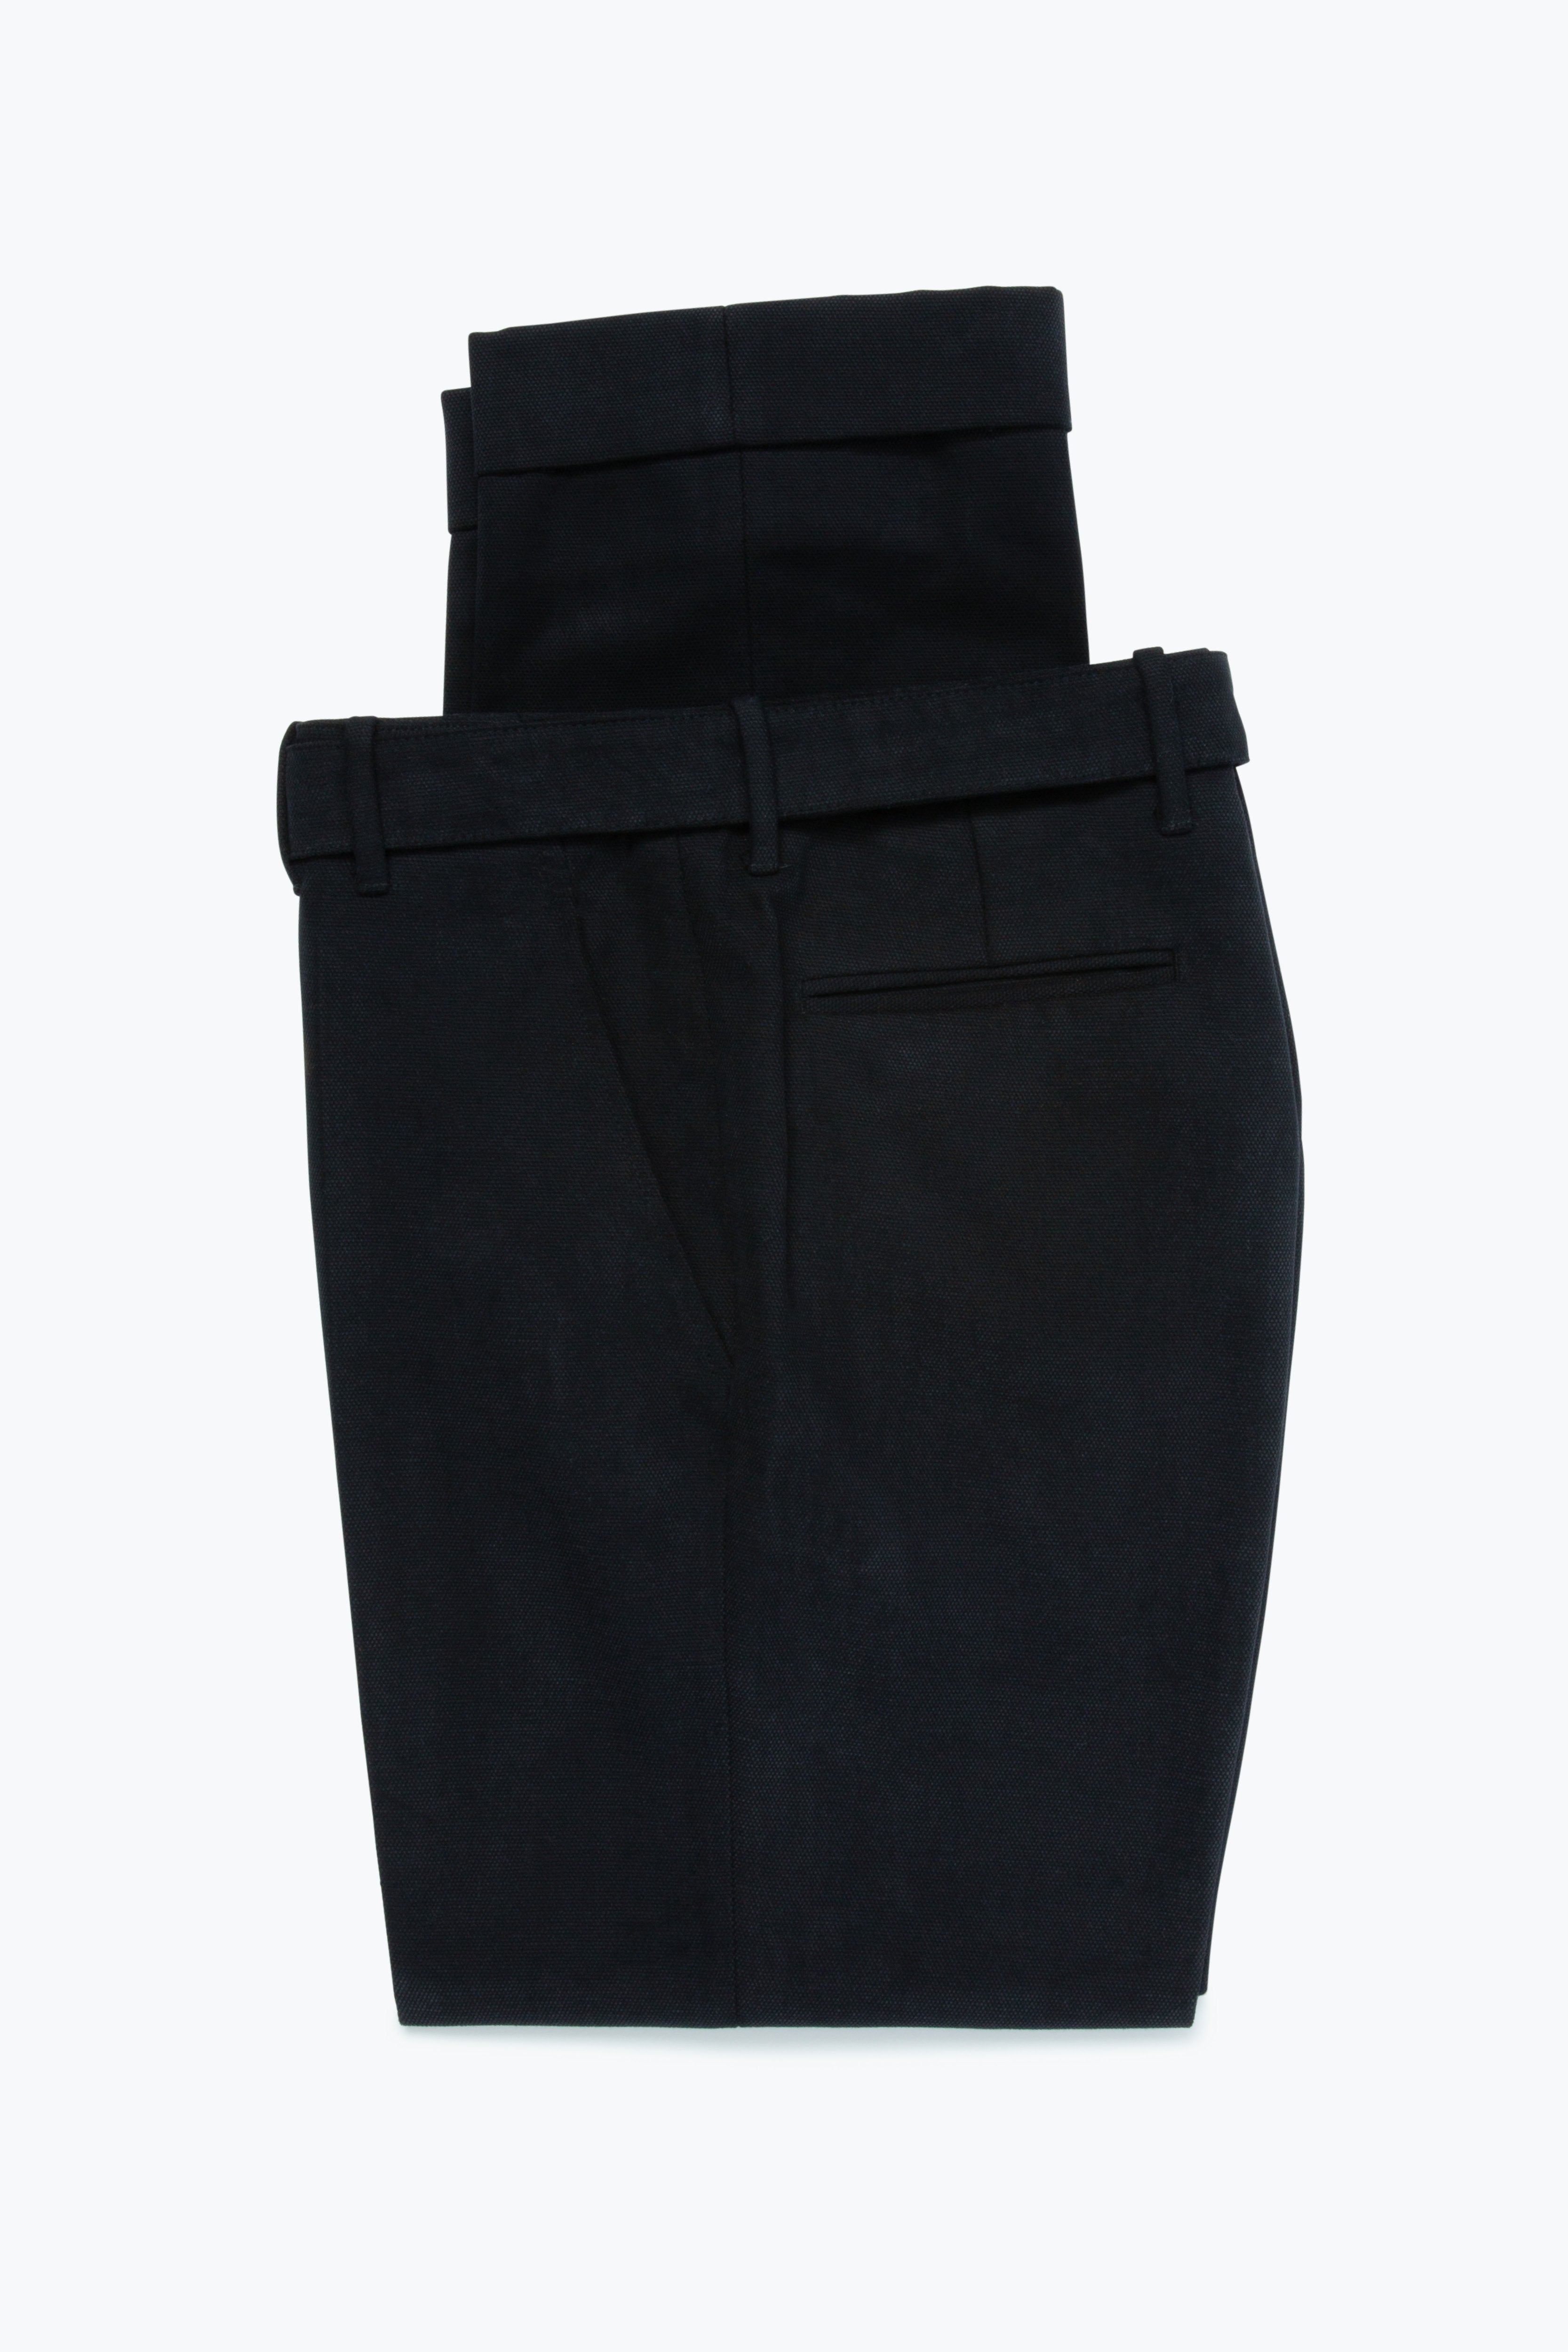 MTO - Plain Front Washable Trousers (Black Cotton Basketweave)